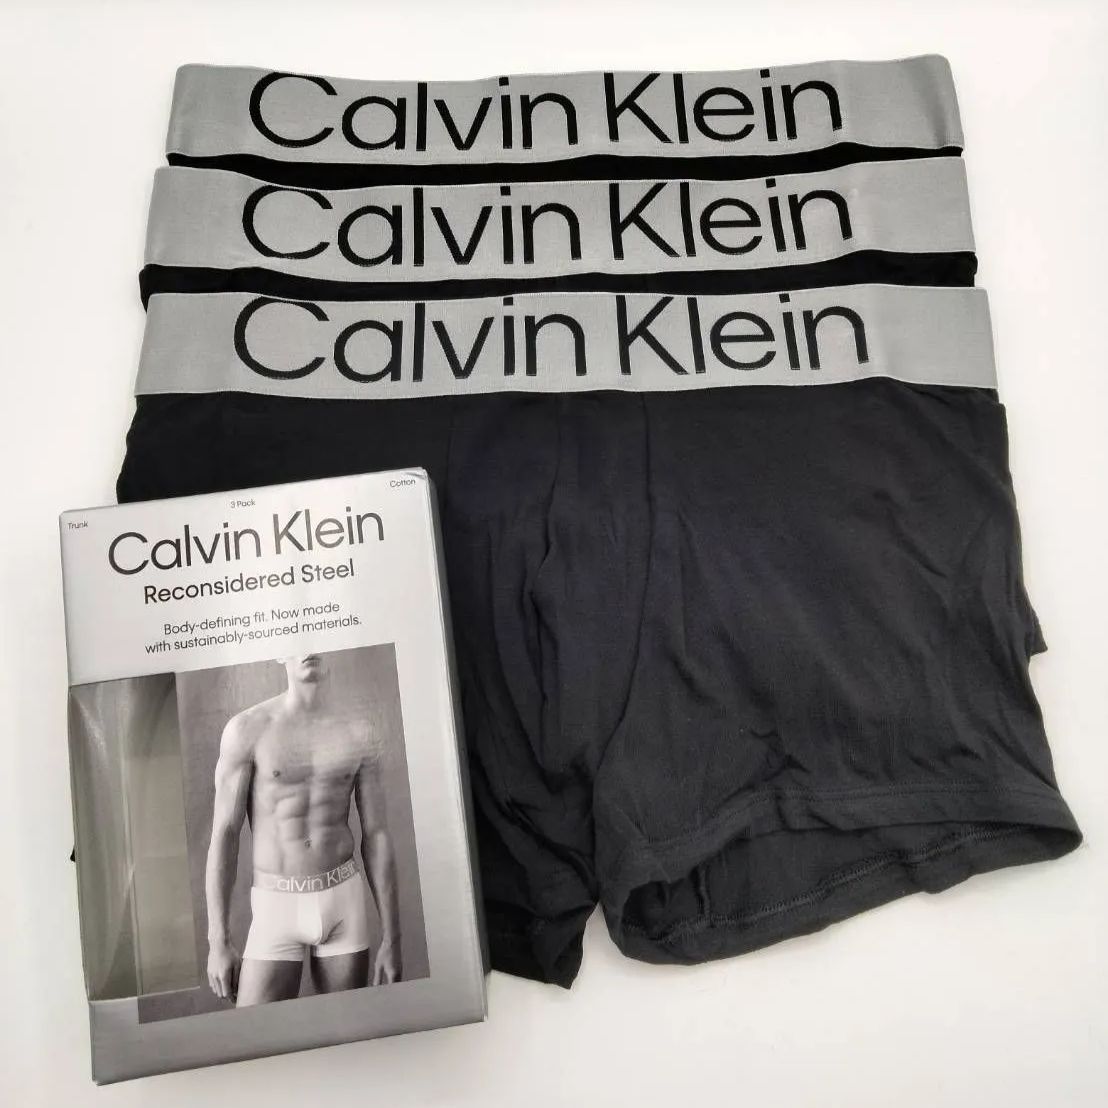 【大人気商品】Calvin Klein(カルバンクライン) ローライズボクサーパンツ ブラック M/Lサイズ 3枚セット メンズボクサーパンツ  男性下着 NB3130